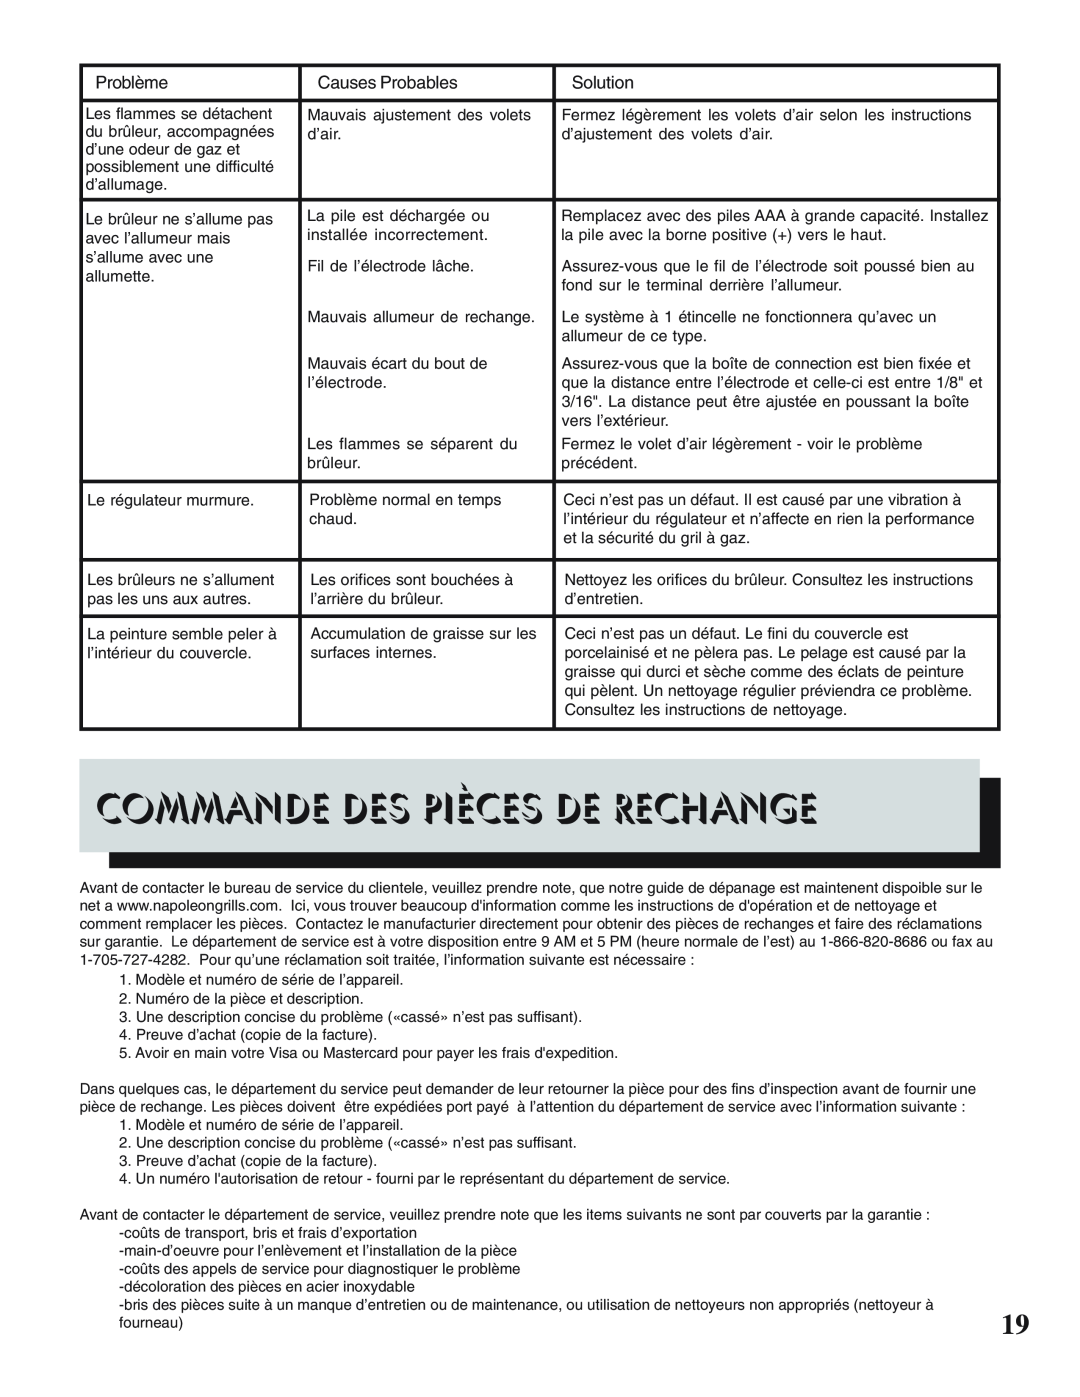 Napoleon Grills 450, PRESTIGE II 308 manual Commande Des Pièces De Rechange, Problème, Causes Probables, Solution 